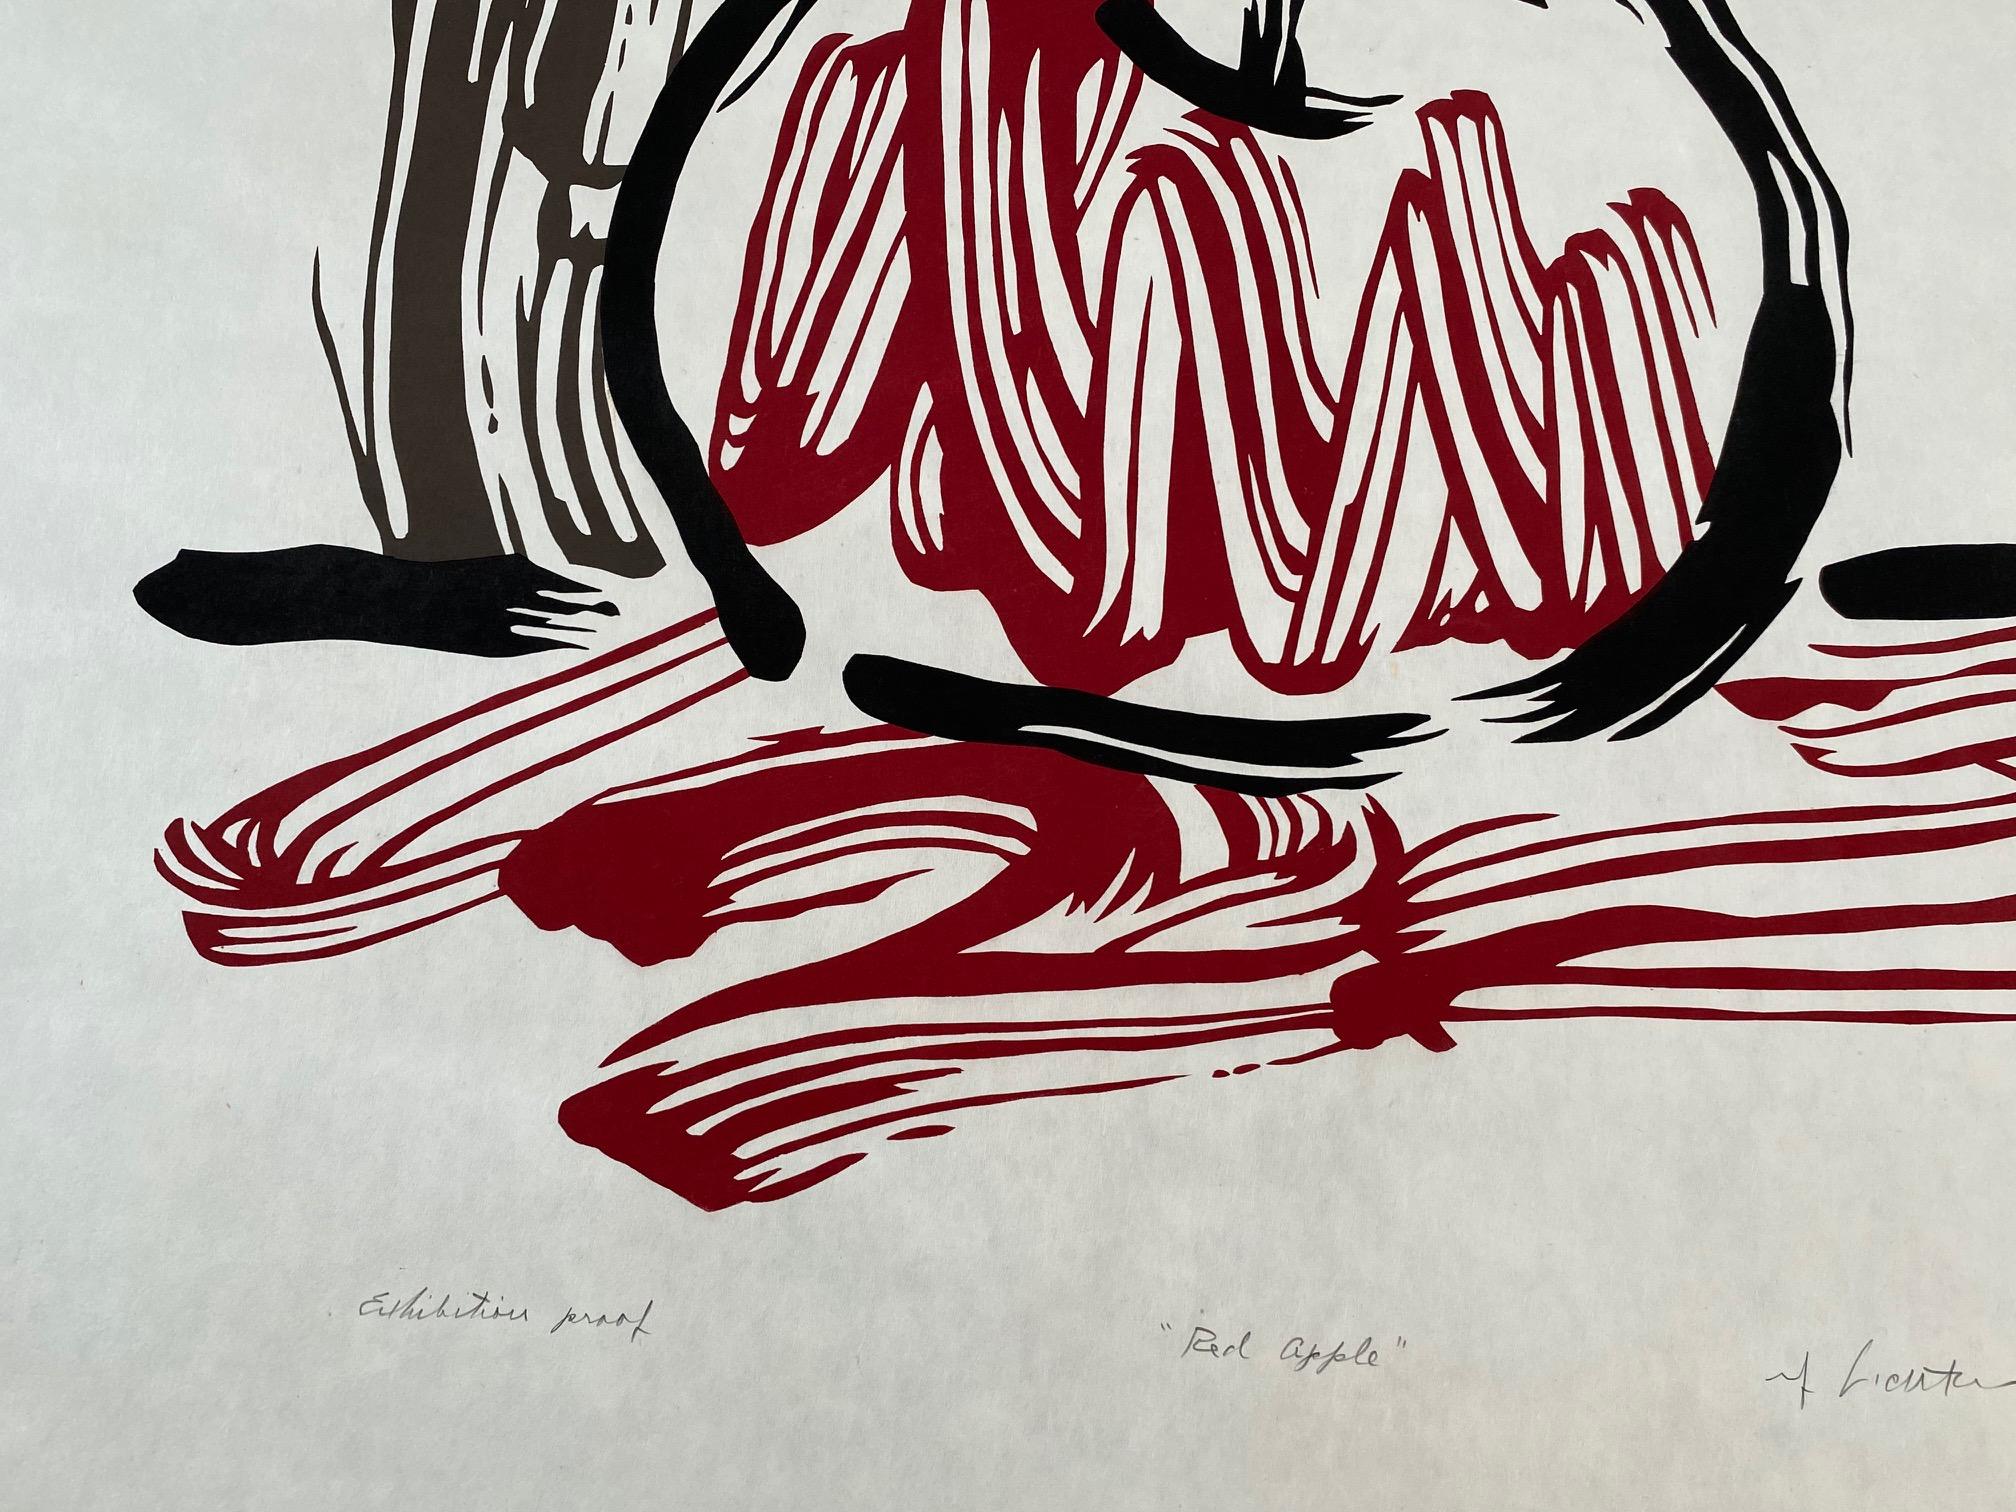 Red Apple, Exhibition Proof - Beige Abstract Print by Roy Lichtenstein